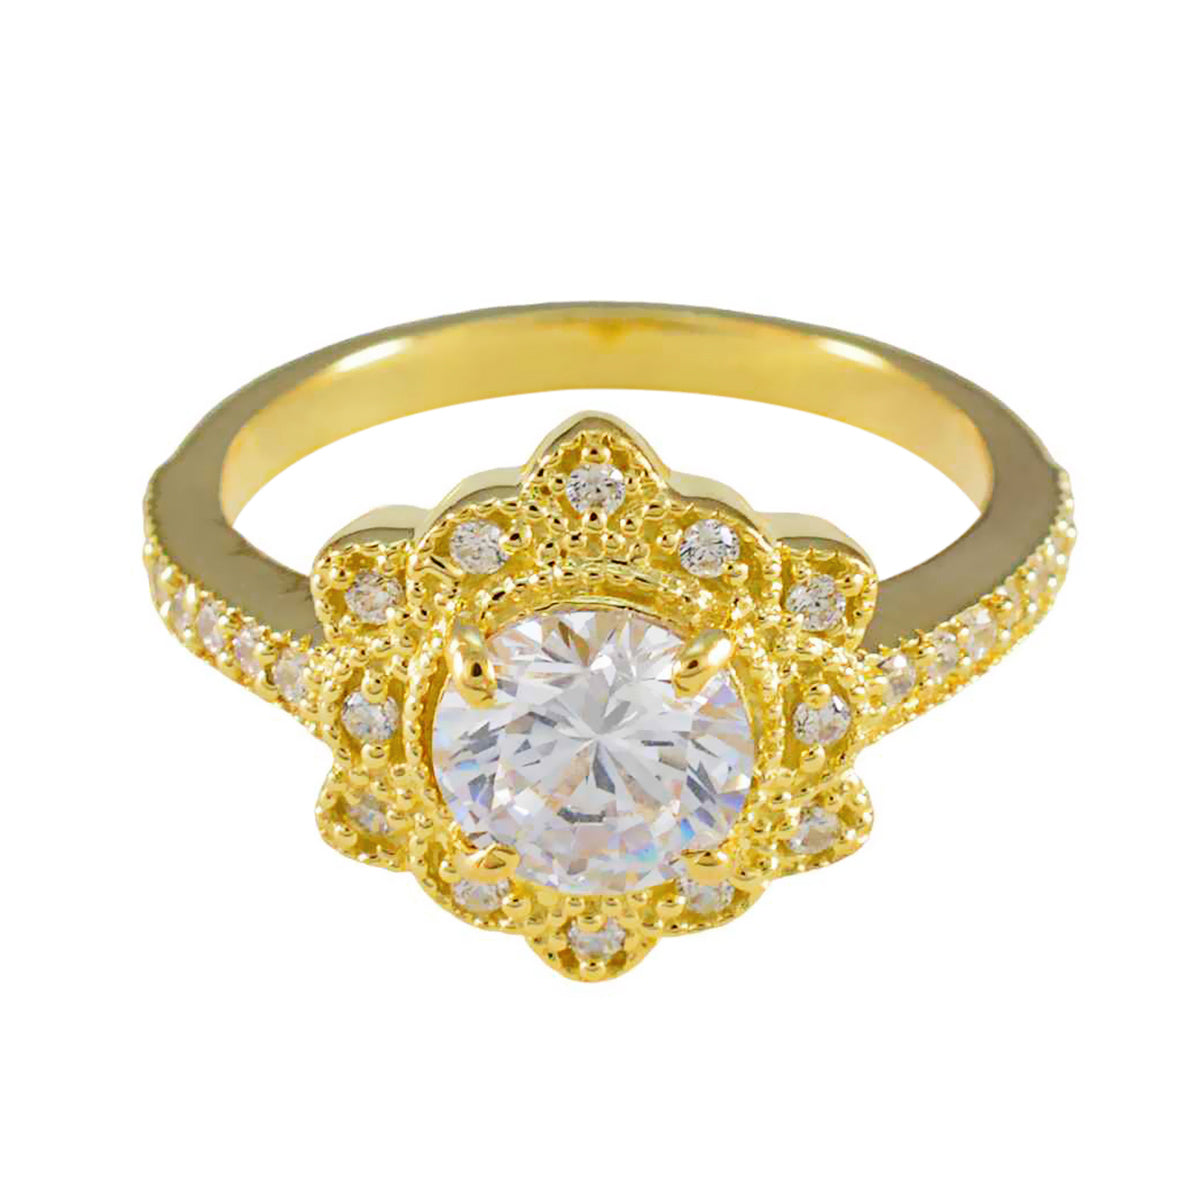 Riyo – bague en argent personnalisée avec placage en or jaune, pierre cz blanche, forme ronde, réglage de griffes, bijoux de mariée, bague de remise de diplôme